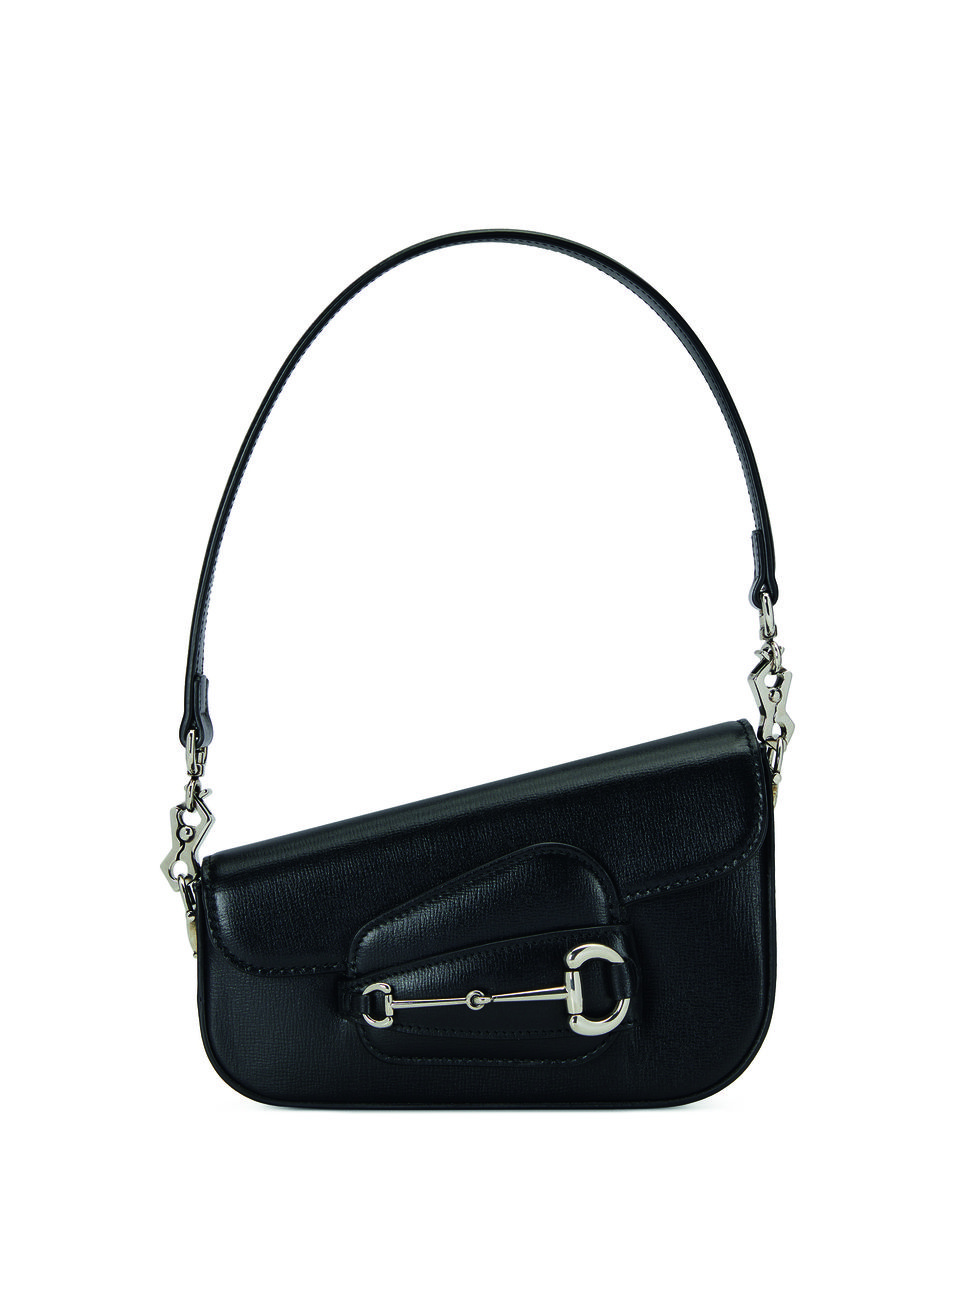 a black handbag with a silver chain